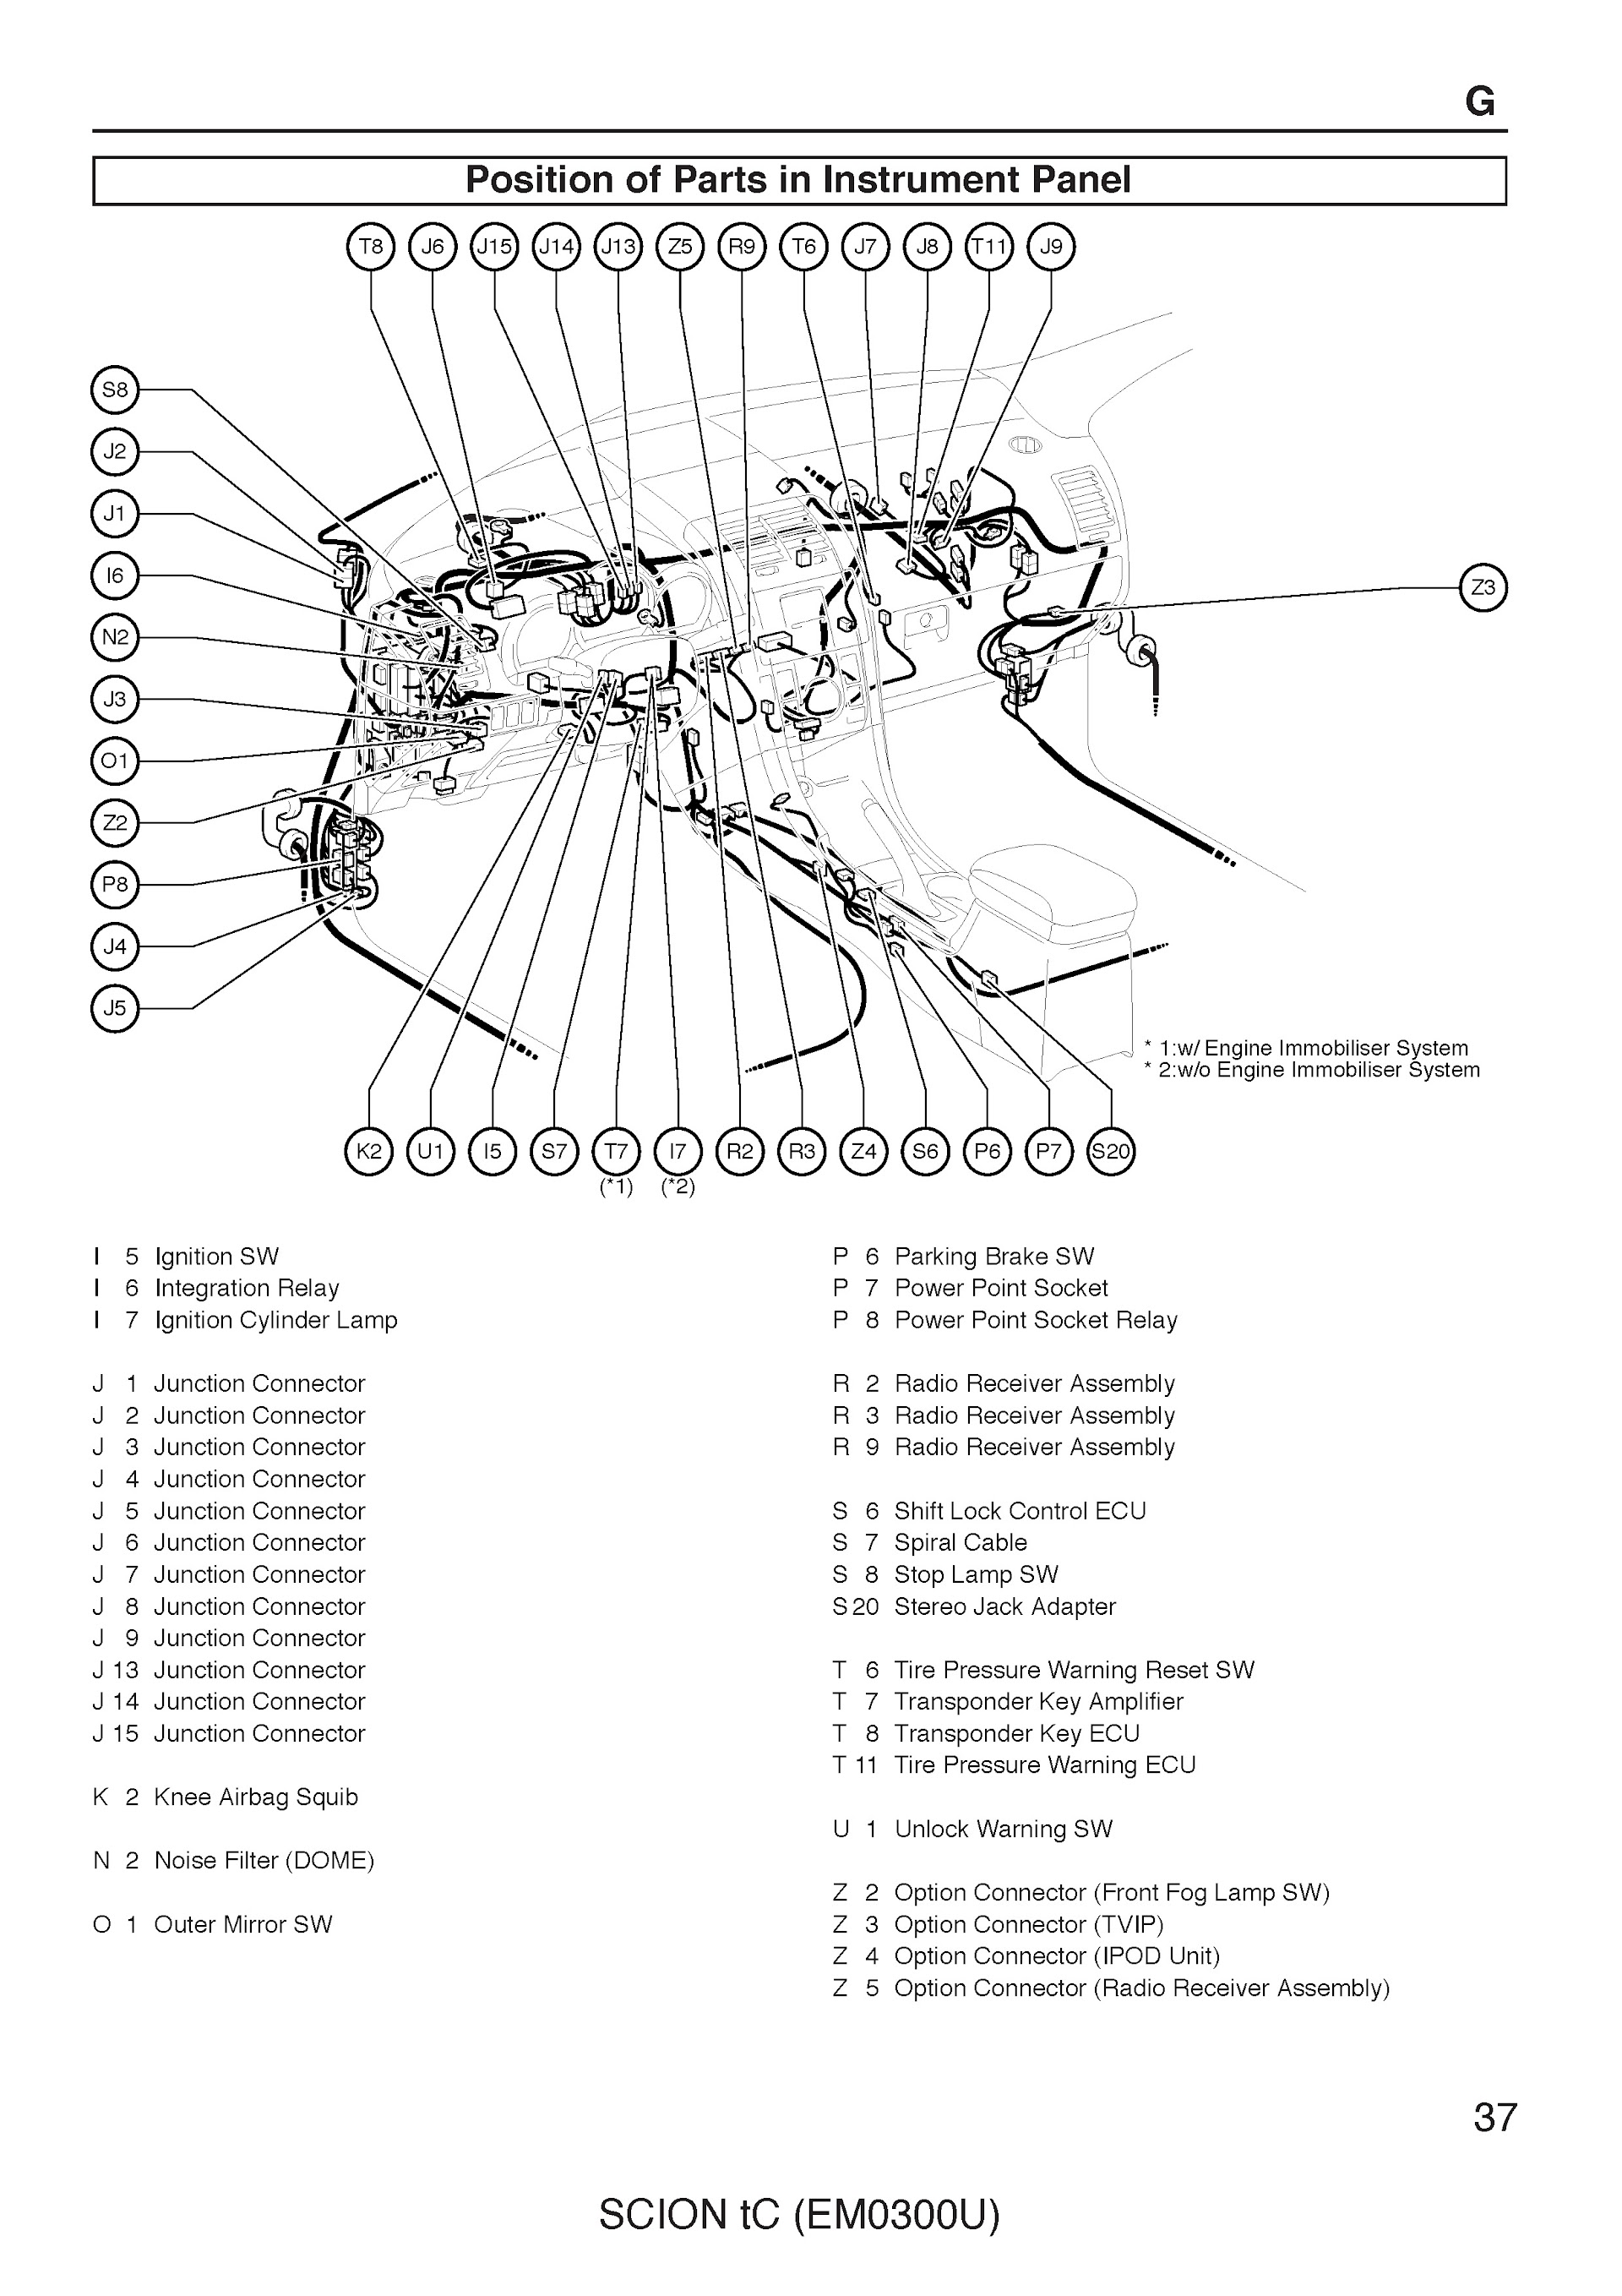 2005-2010 Toyota Scion tC Repair Manual EM0300U Position of Parts in Instrument Panel